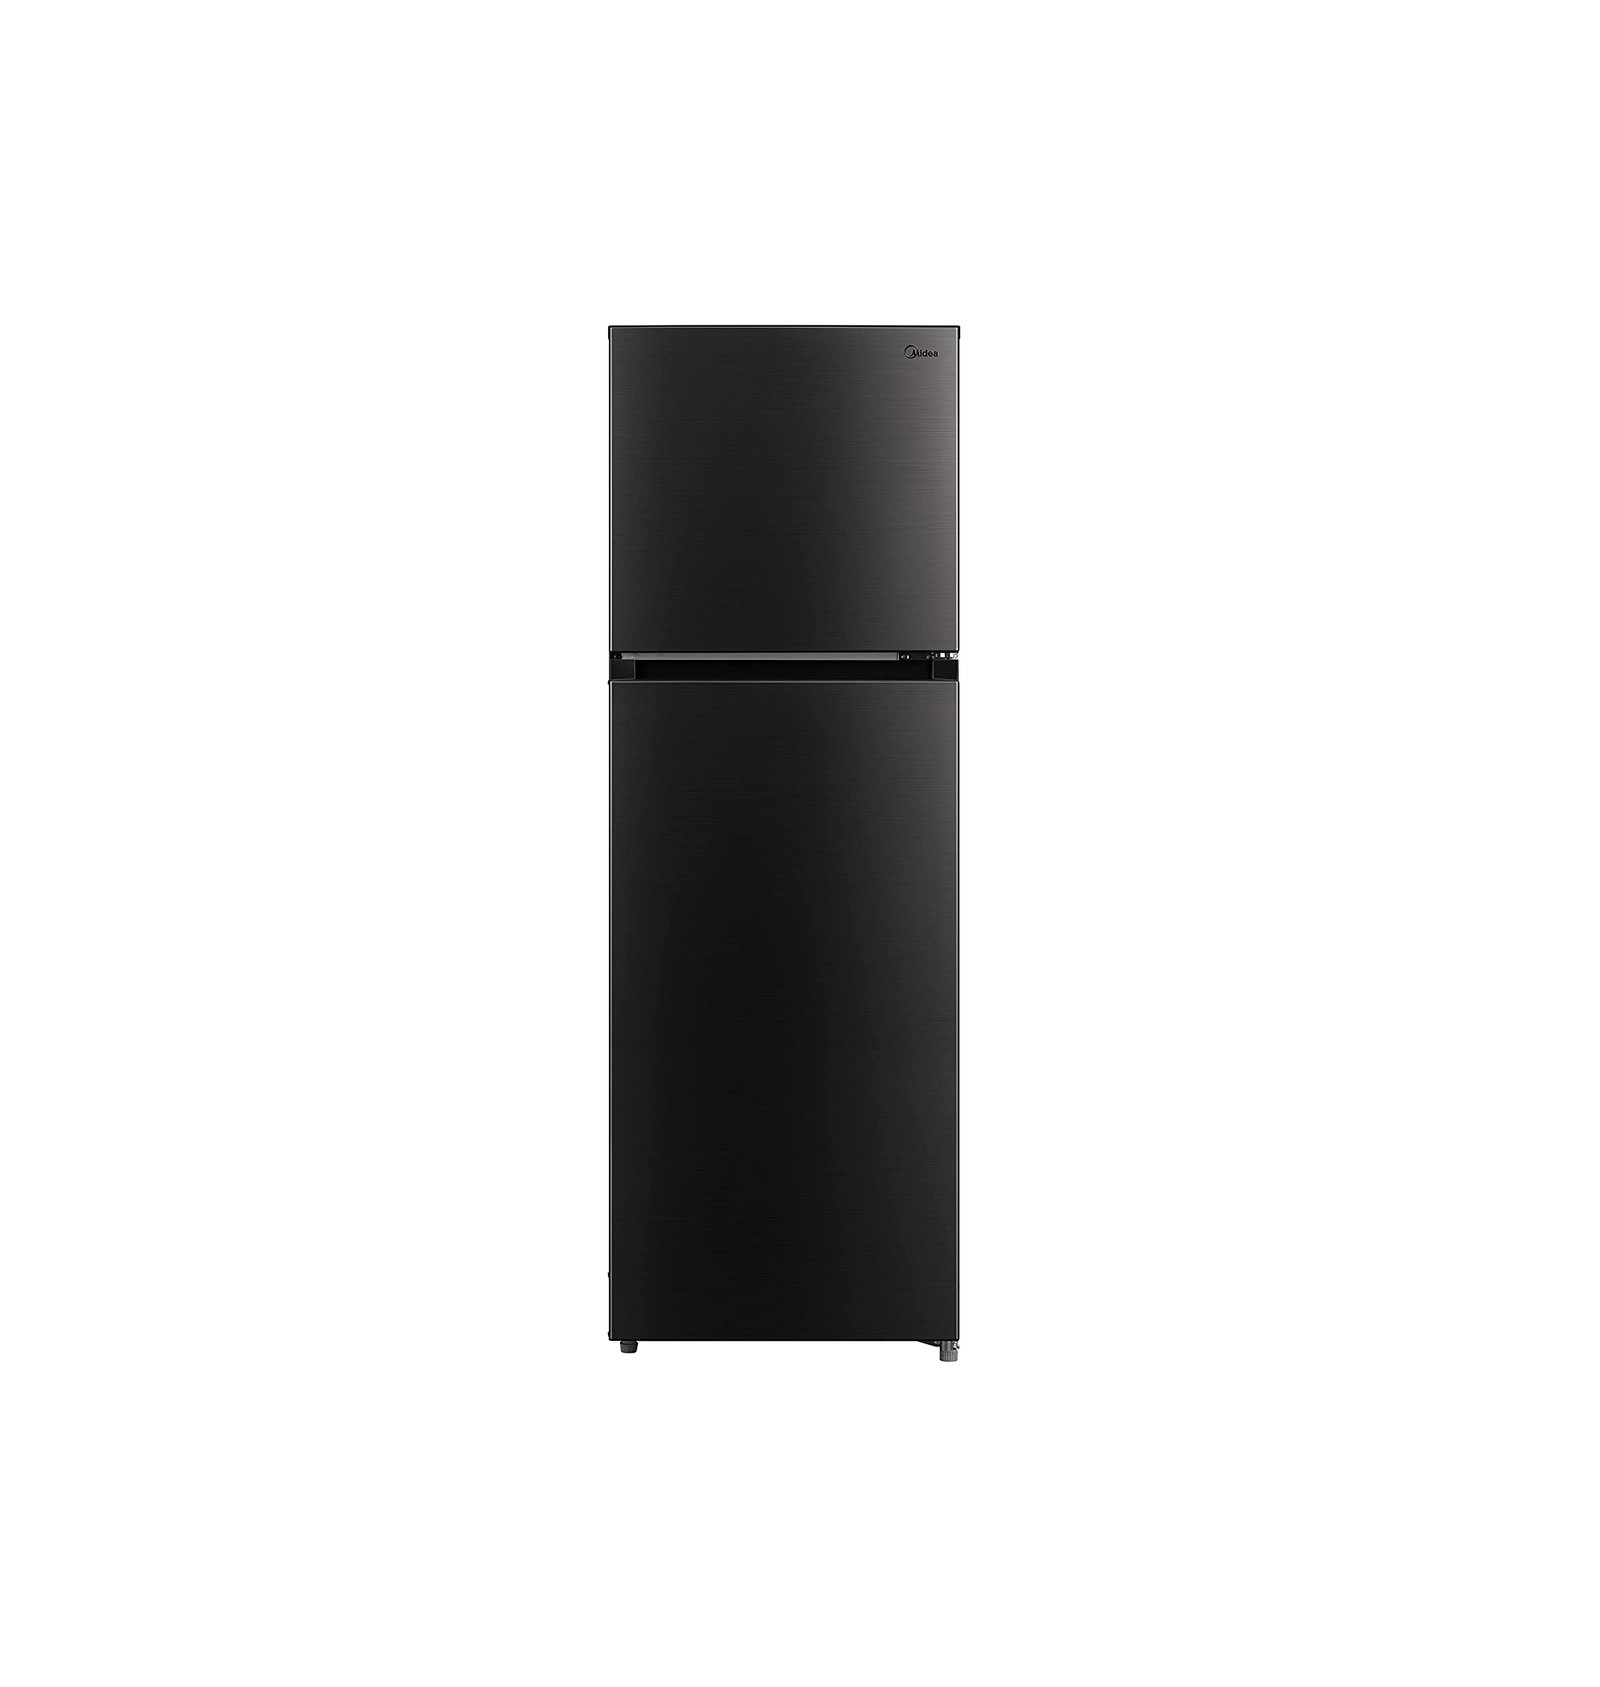 Midea 390 Liter Top Mount Double Door Refrigerator With Smart Sensor Dark Silver Model – MDRT390MTE28 – 1 Year Full 5 Years Compressor Warranty.